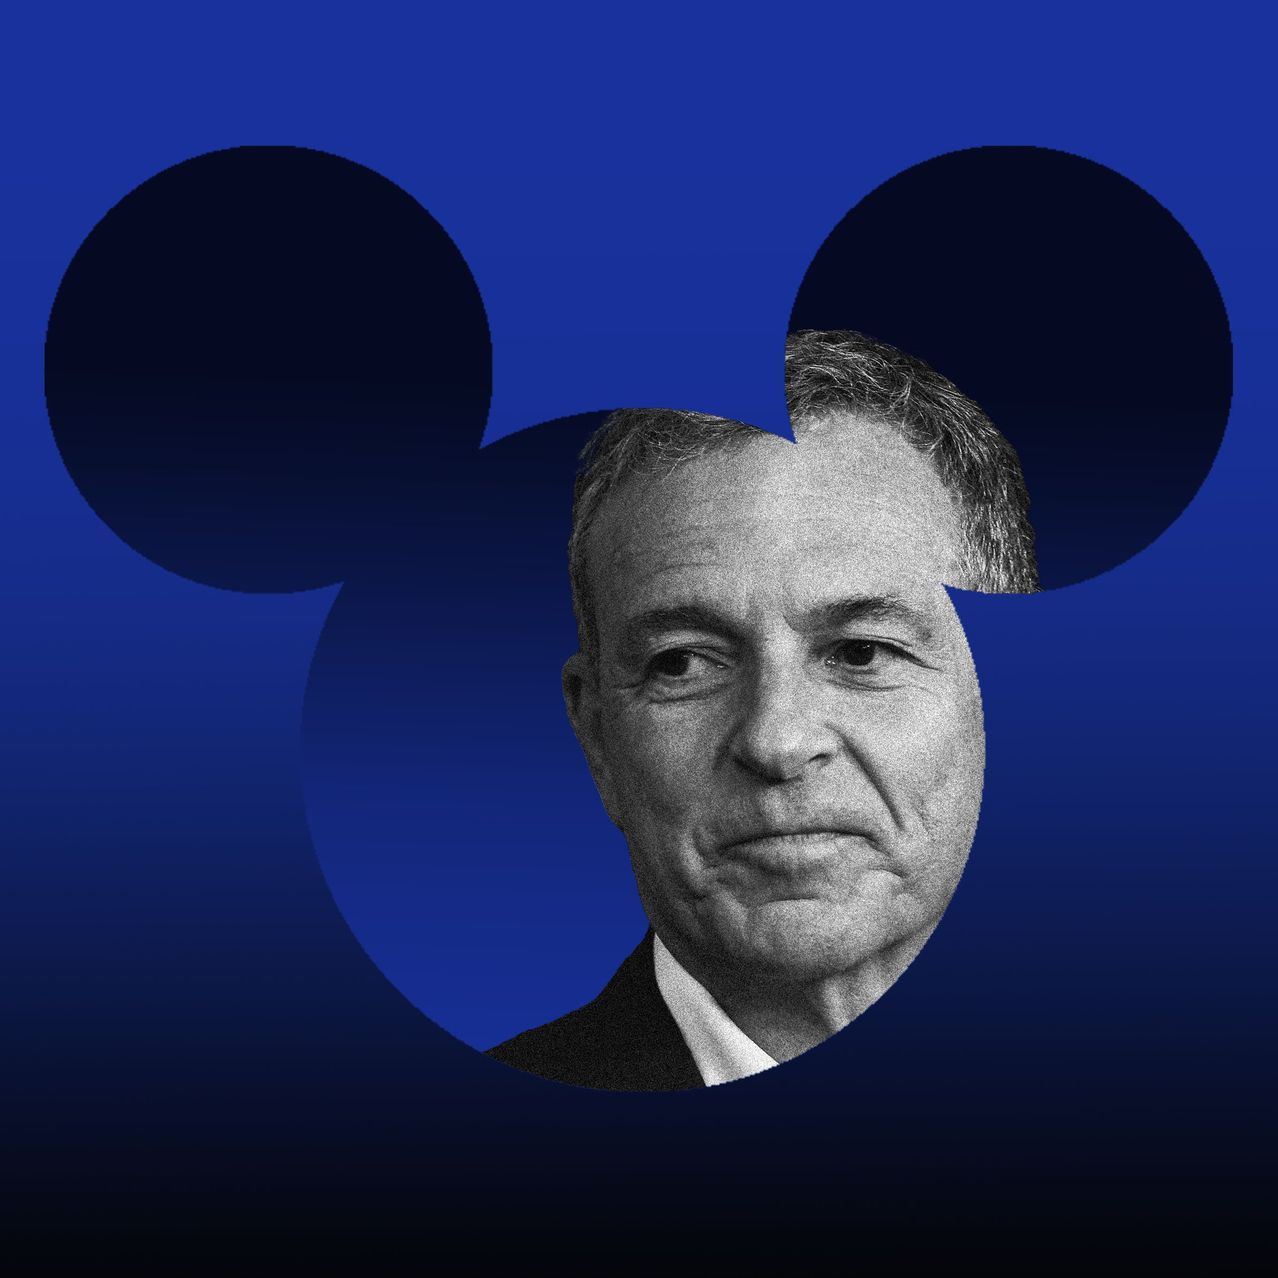 СМИ: Боб Айгер готов продать Disney из-за больших убытков - покупатель уже известен